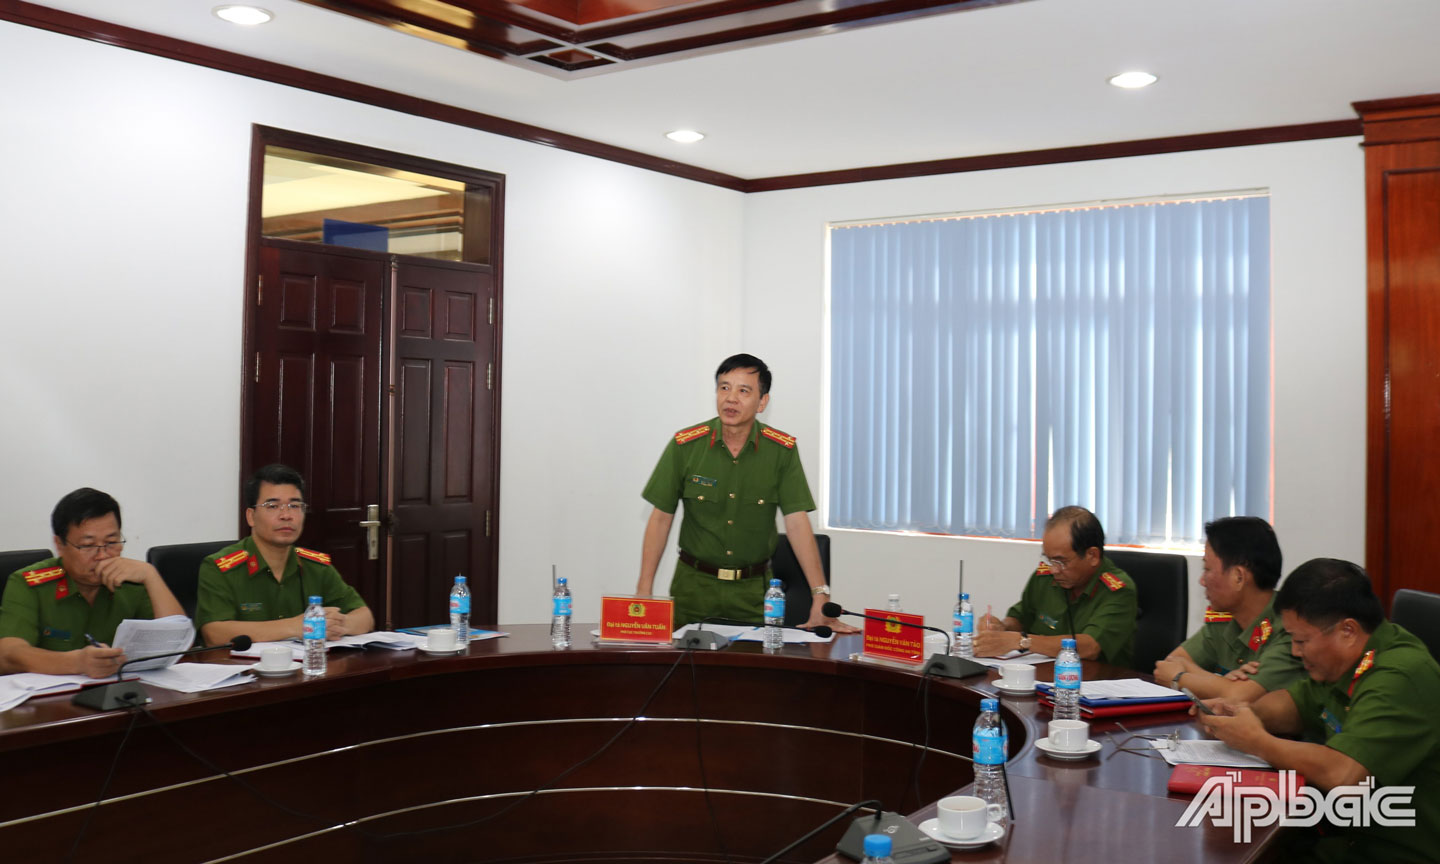 Đại tá Nguyễn Văn Tuấn, Phó Cục trưởng Cục Cảnh sát quản lý trại giam, cơ sở giáo dục bắt buộc, trường giáo dưỡng (Bộ Công an) phát biểu tại buổi khảo sát. 